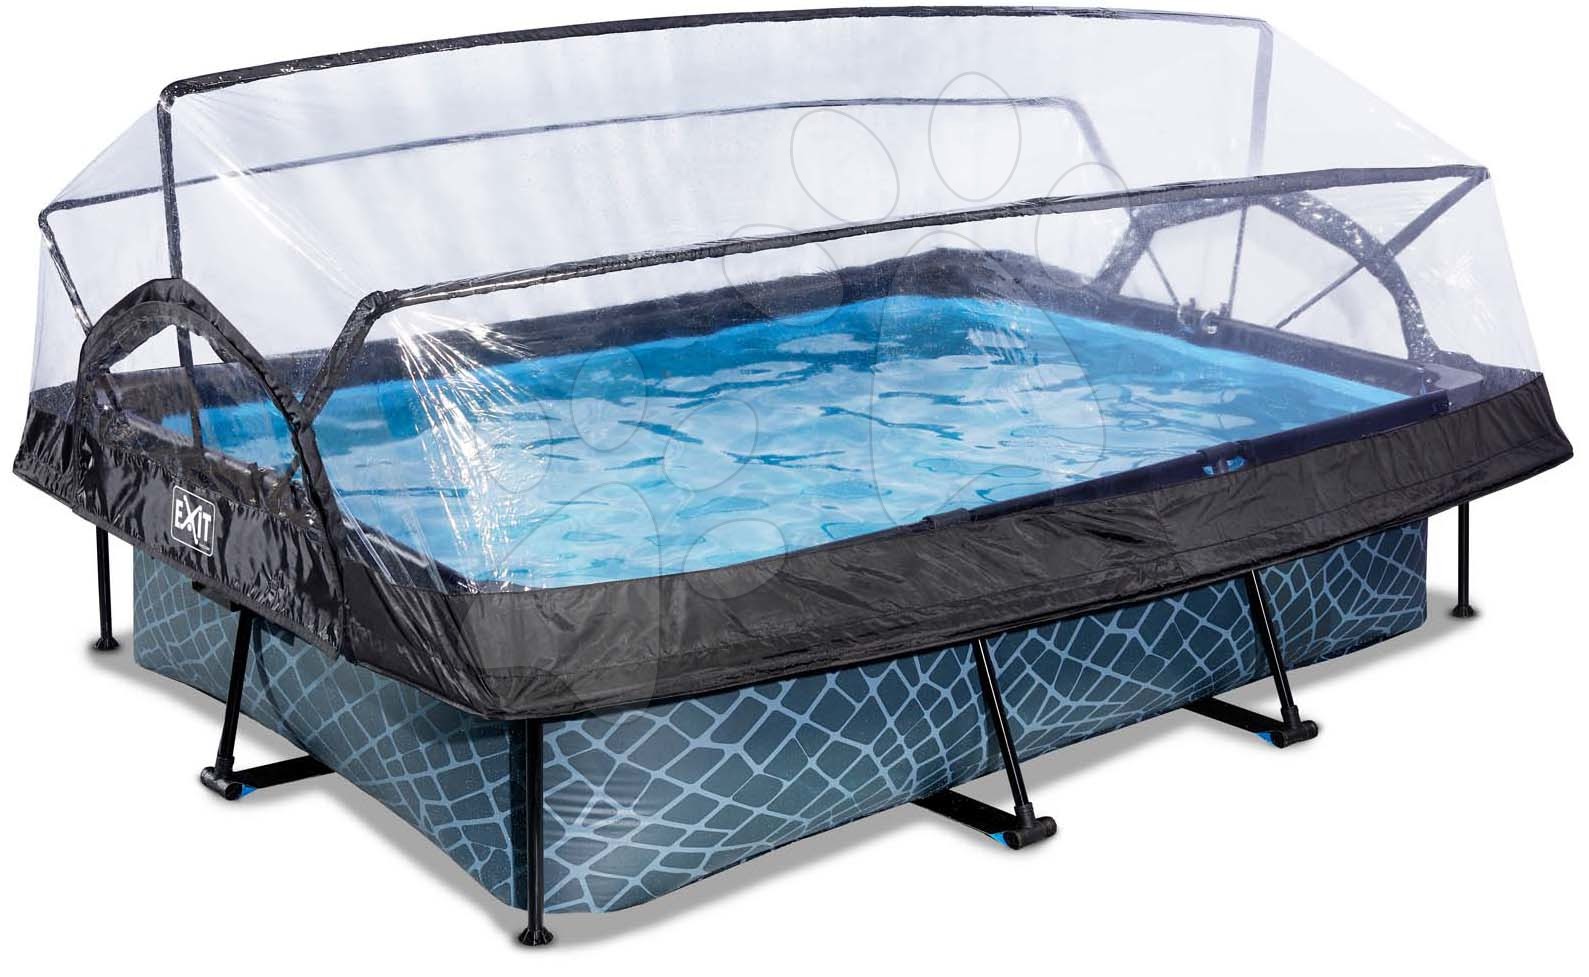 Bazén s krytom a filtráciou Stone pool Exit Toys oceľová konštrukcia 300*200*65 cm šedý od 6 rokov